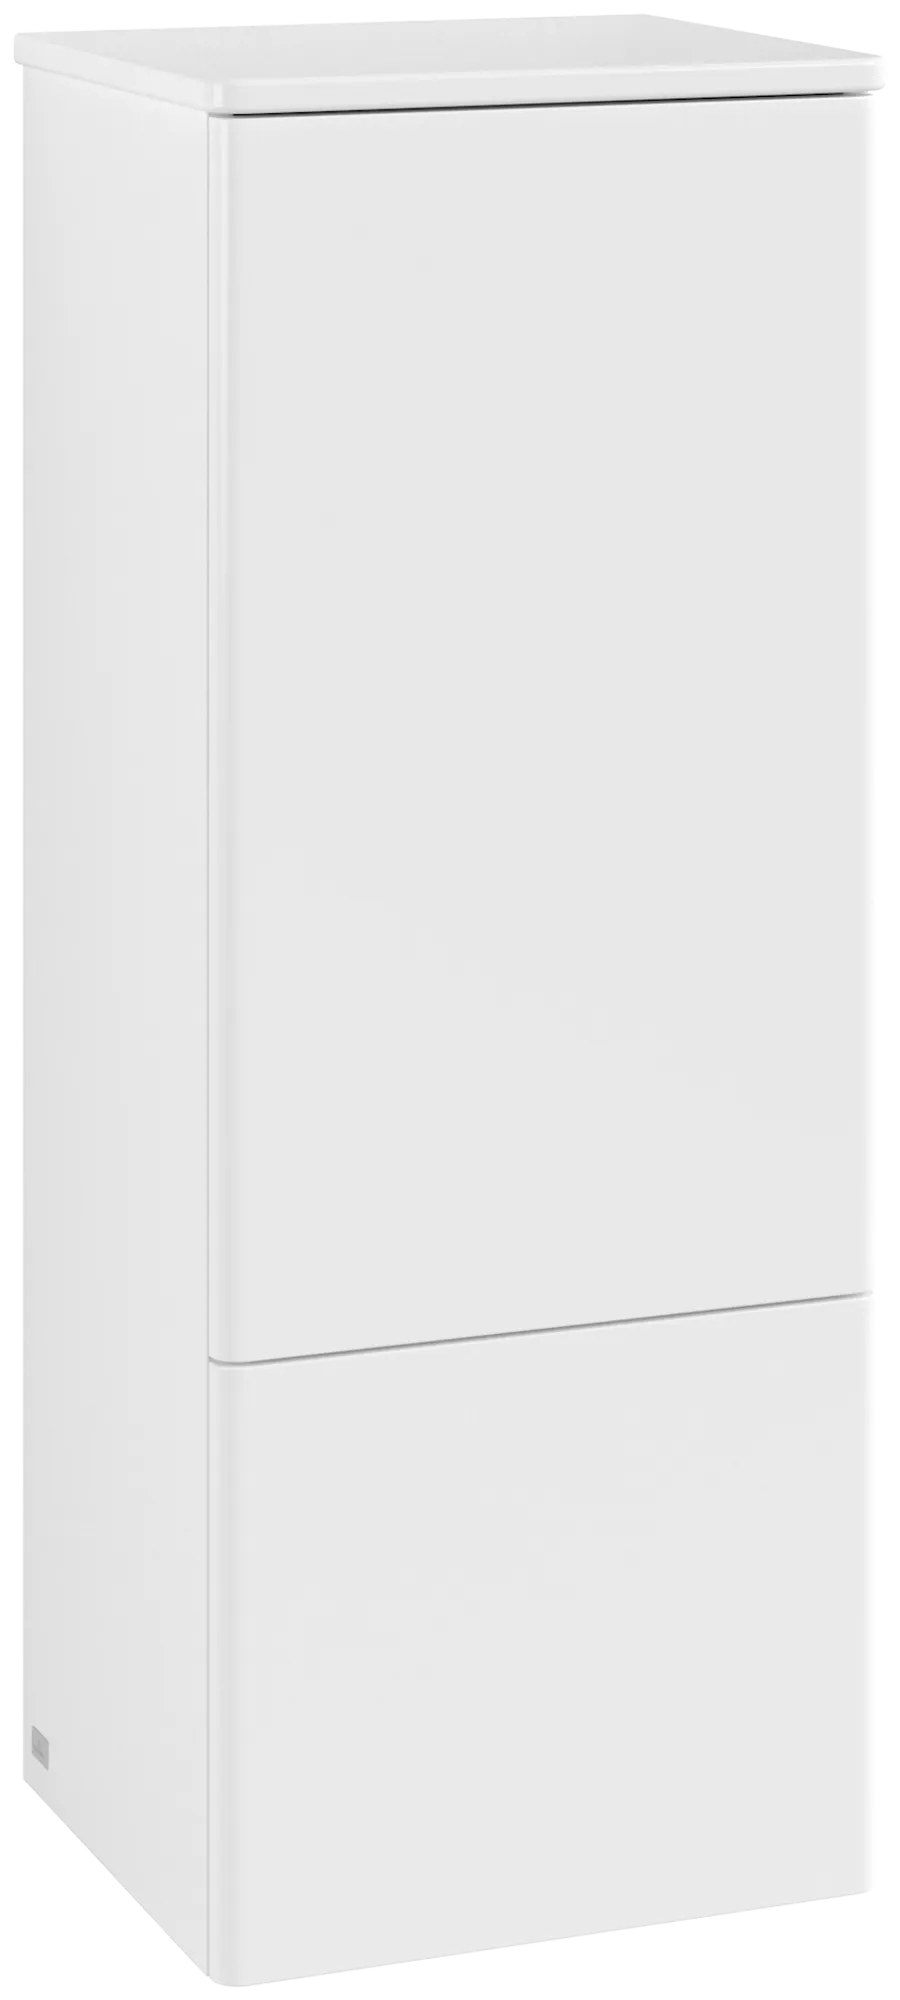 Bild von VILLEROY BOCH Antao Mittelschrank, mit Beleuchtung, 1 Tür, 414 x 1039 x 356 mm, Front ohne Struktur, White Matt Lacquer / White Matt Lacquer #L44000MT